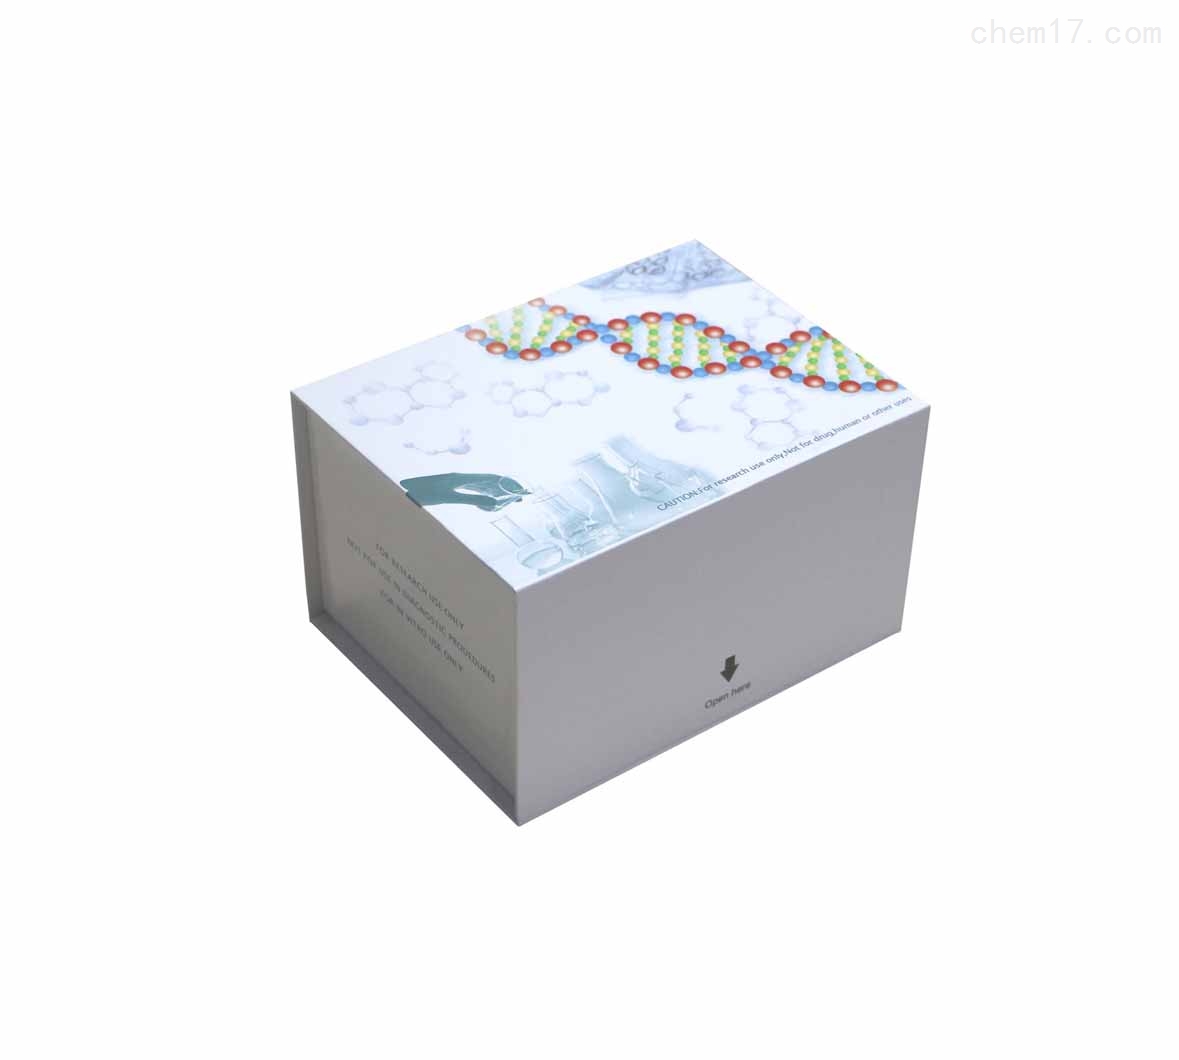 人膜辅蛋白(MCP/CD46)ELISA试剂盒检测目的